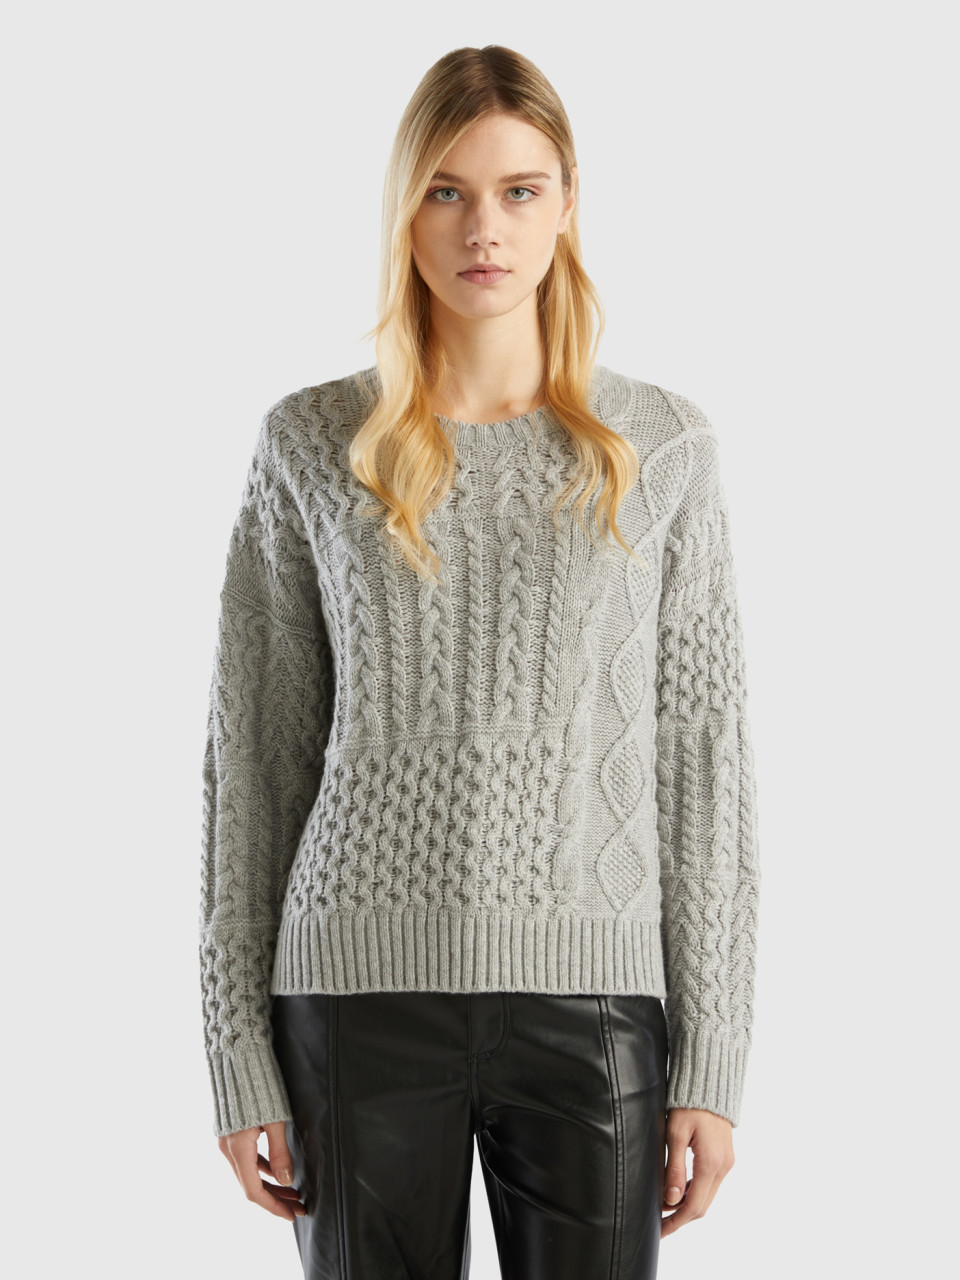 Benetton, Knit Patchwork Sweater, Light Gray, Women